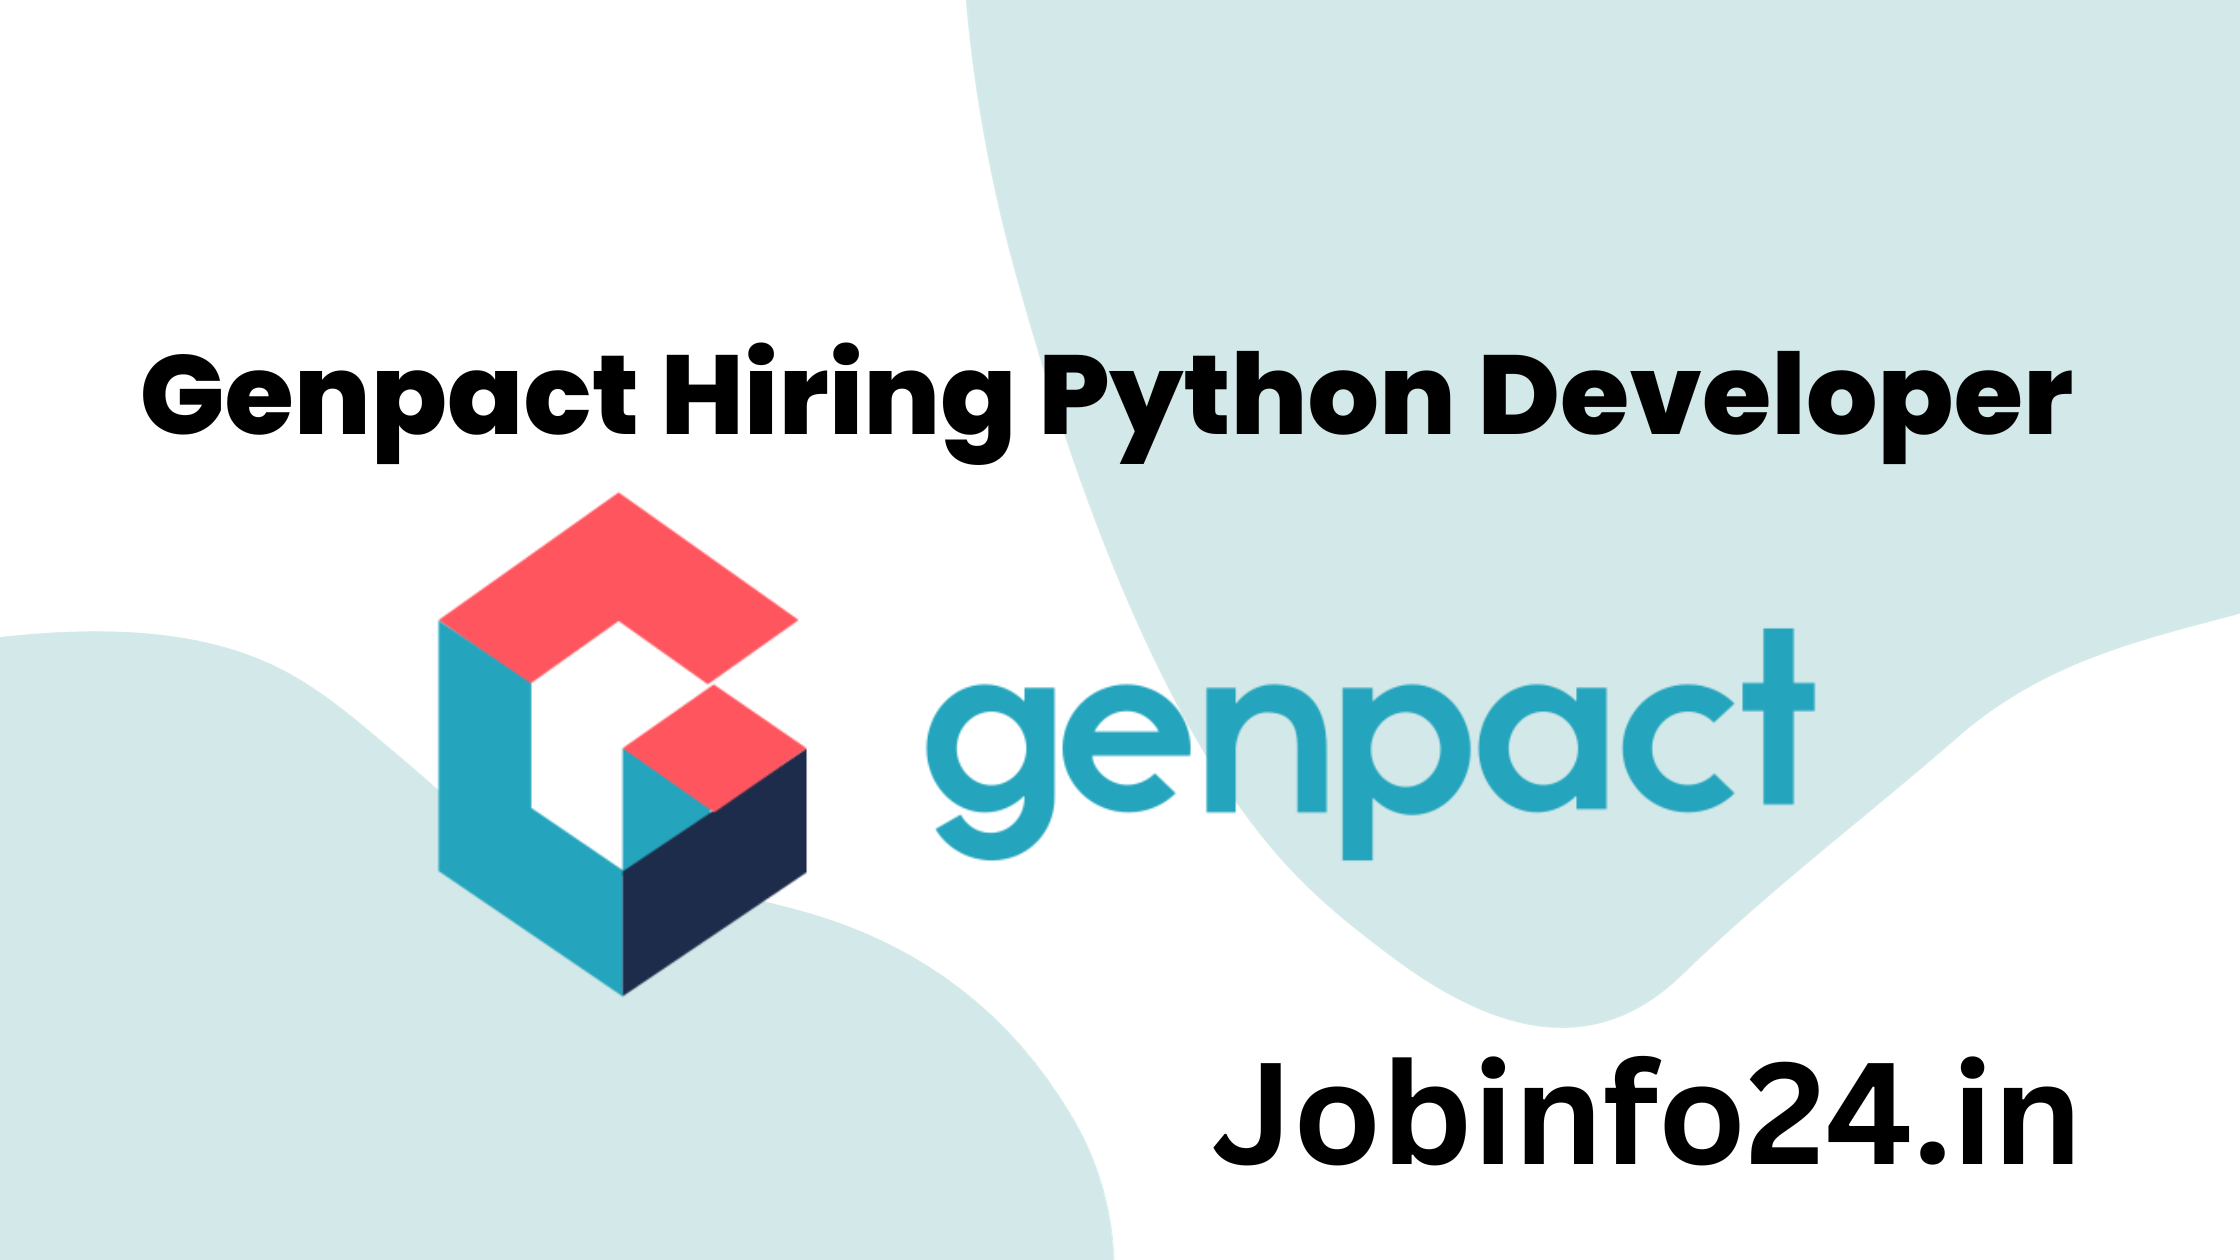 Genpact Hiring Python Developer